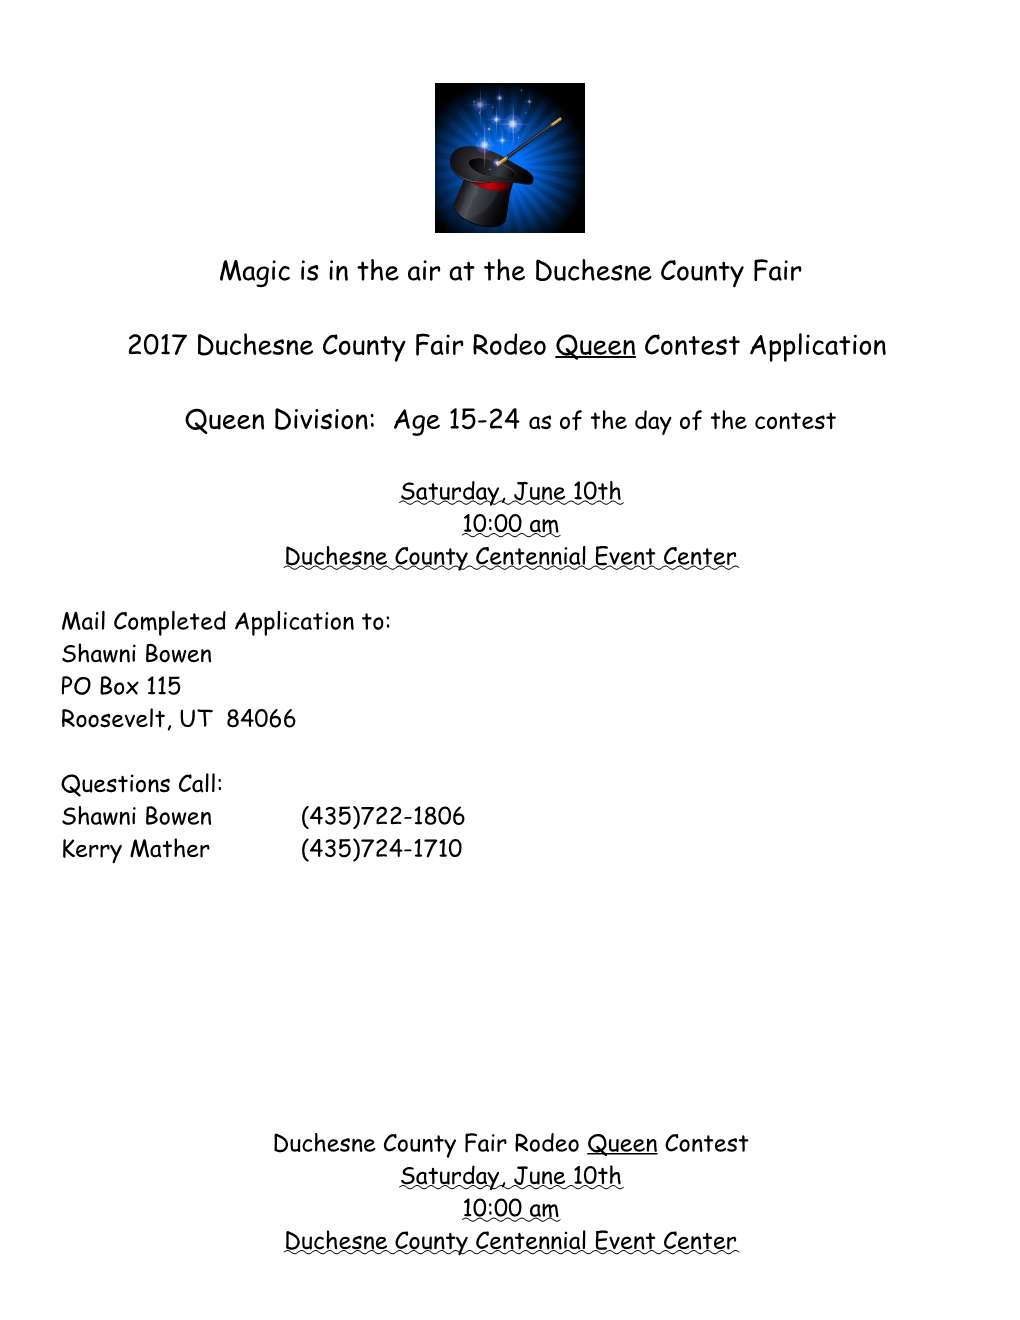 Magic Is in the Air at the Duchesne County Fair